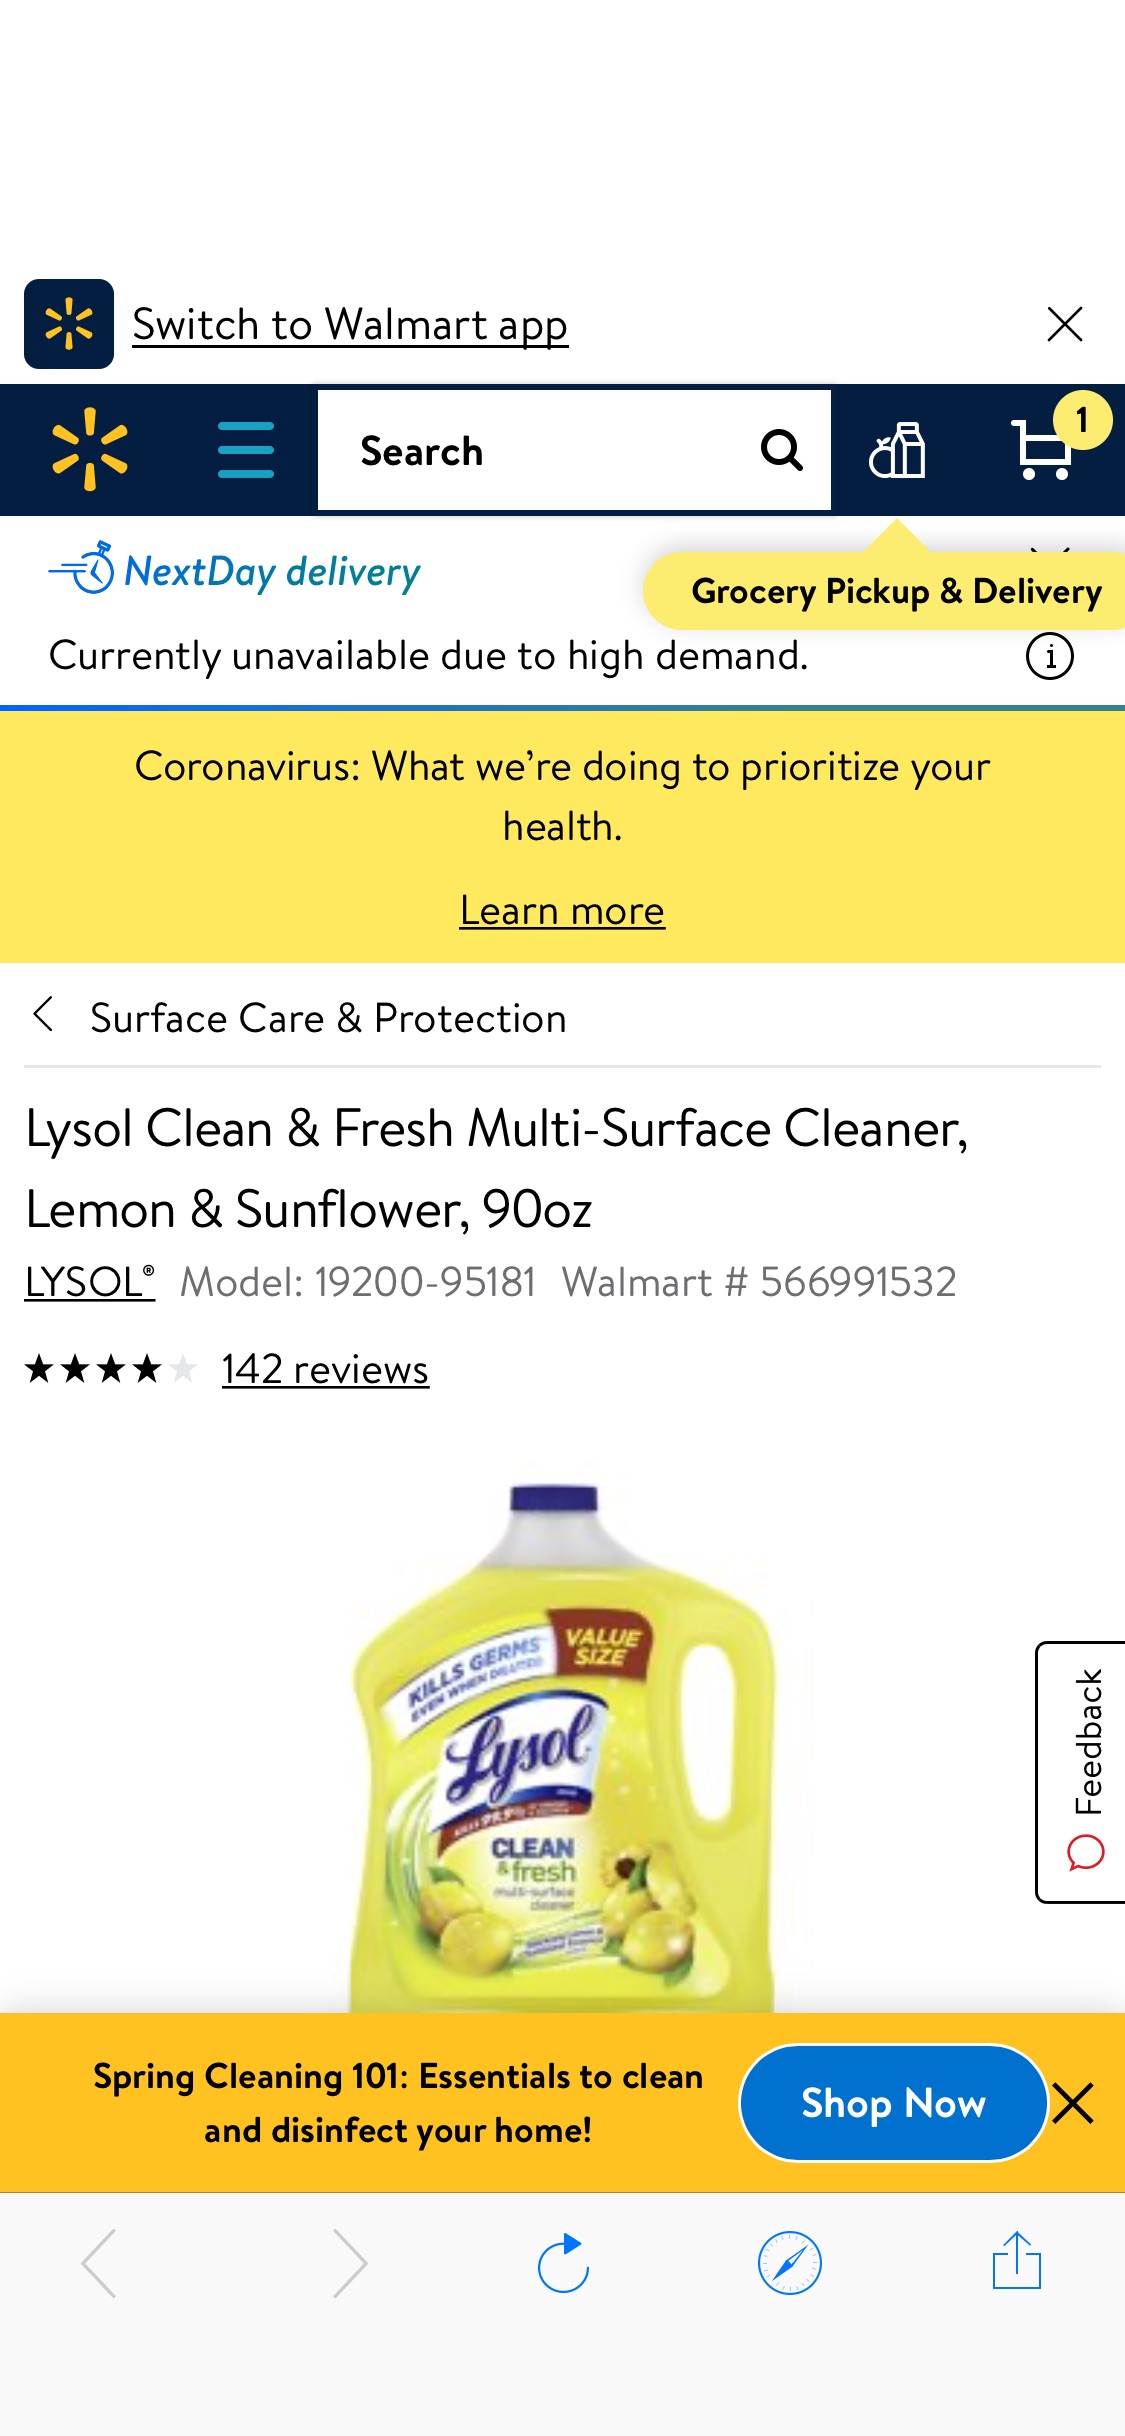 消毒产品 Lysol Clean & Fresh Multi-Surface Cleaner, Lemon & Sunflower, 90oz - Walmart.com - Walmart.com